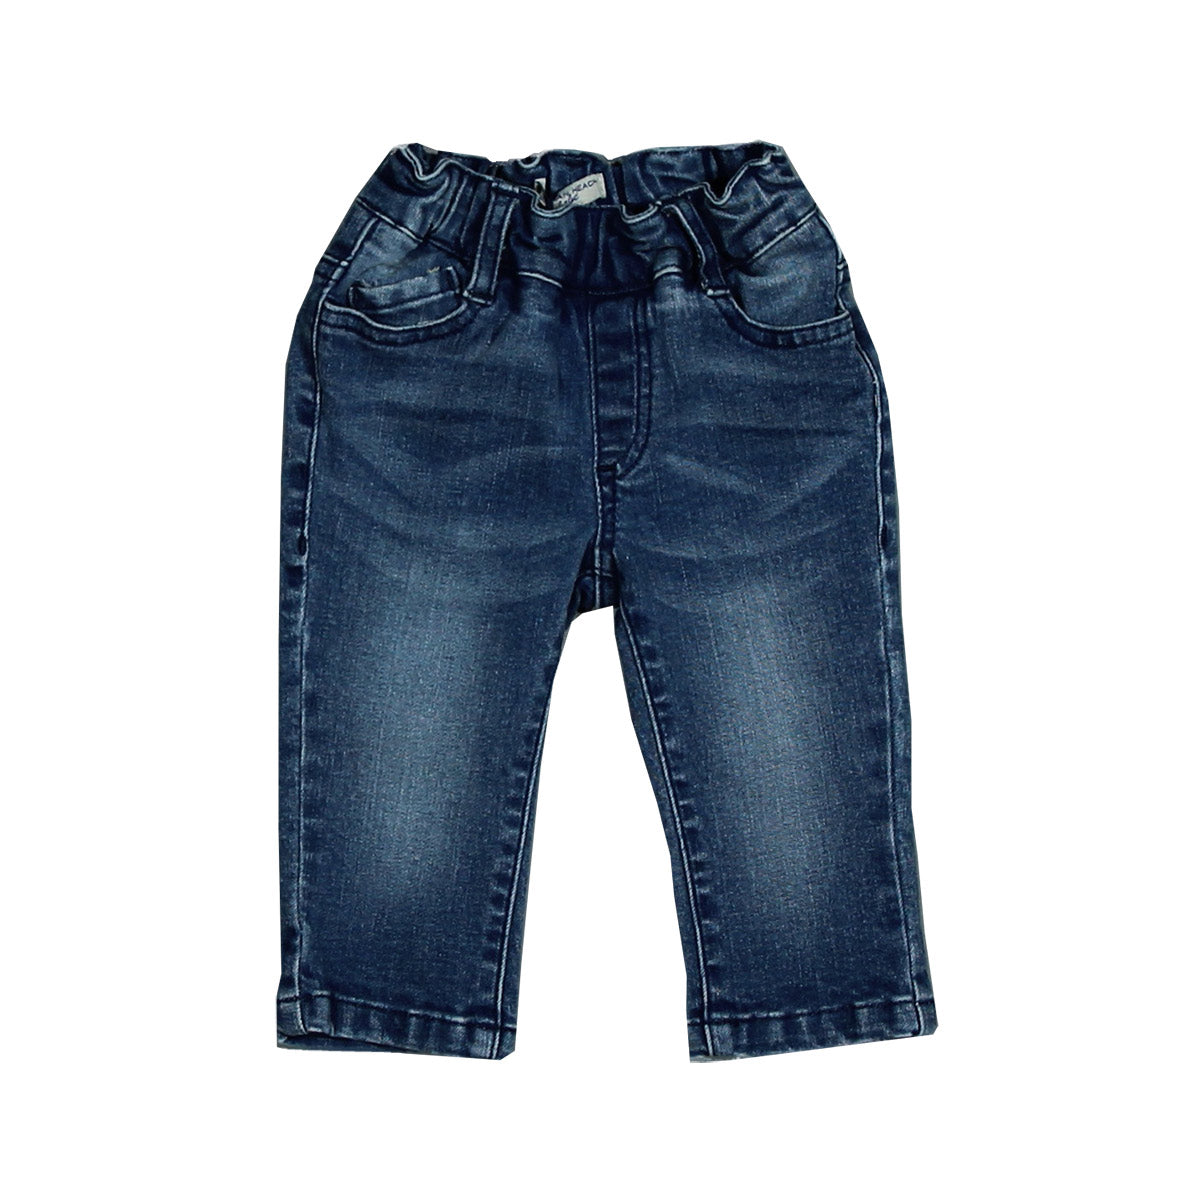 Pouch Jeans aus der Kinderkleidungslinie Silvian Heach Kids mit weichem und elastischem Taillenmo...